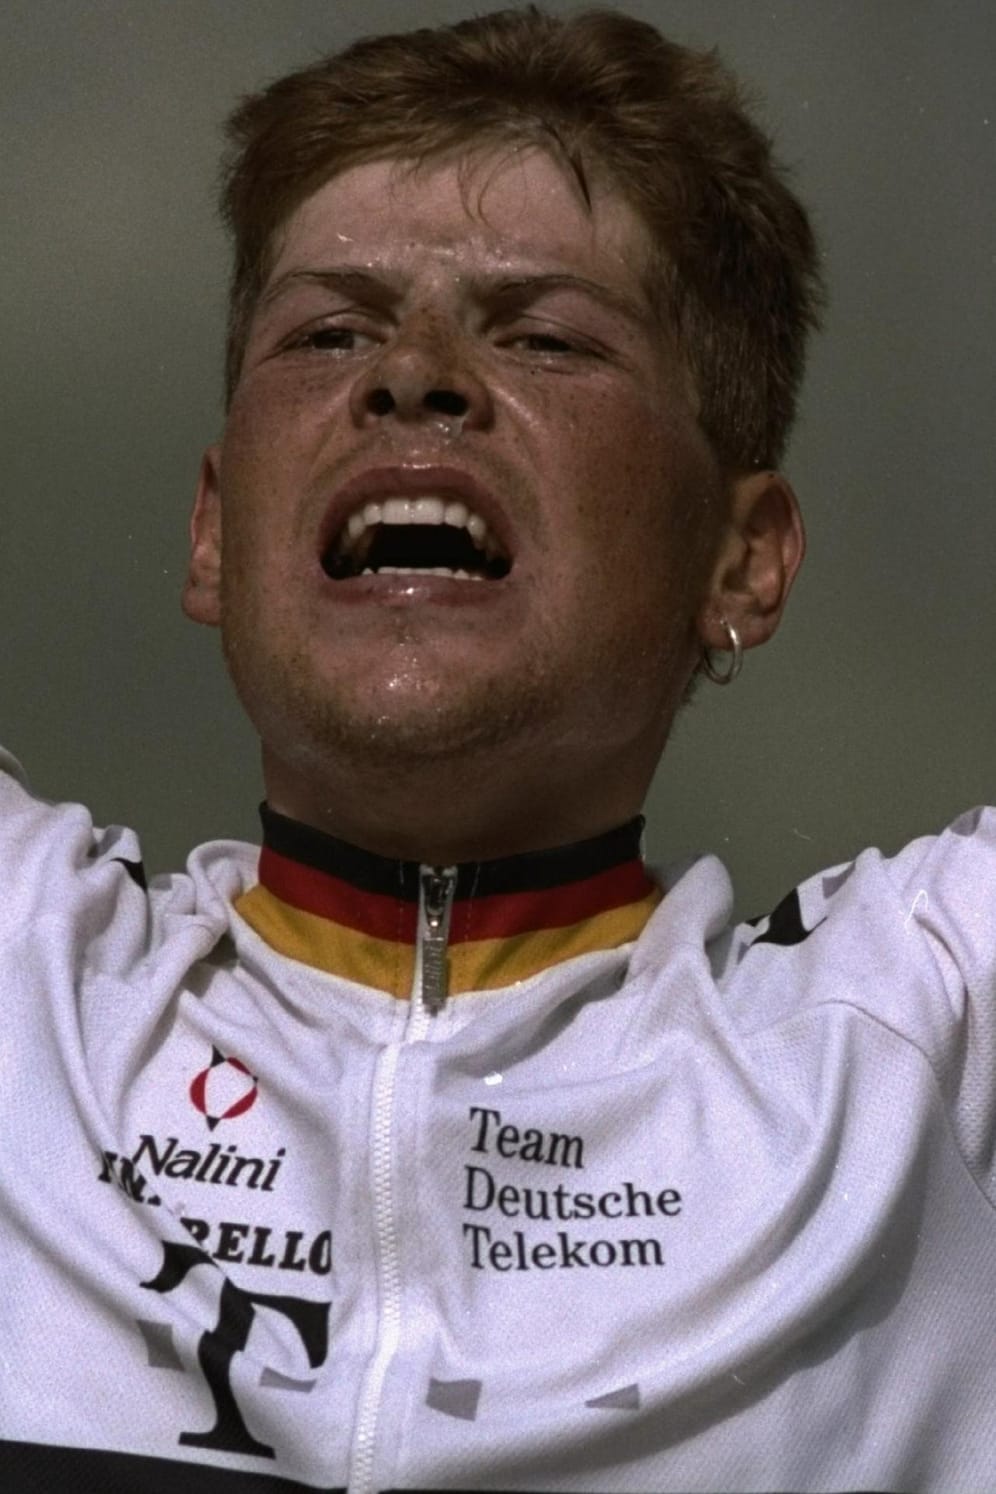 Jan Ullrich (1997): Als einziger Deutscher gewann er 1997 die Tour de France. Des Weiteren war er zweimal Weltmeister im Einzelzeitfahren sowie Sieger des Olympischen Straßenrennen 2000. Seine Karriere fand ein jähes Ende, als er 2006 wegen Dopings von der Tour de France ausgeschlossen und sein Vertrag gekündigt wurde. 2007 gab Ullrich das Ende seiner Radsportkarriere bekannt.